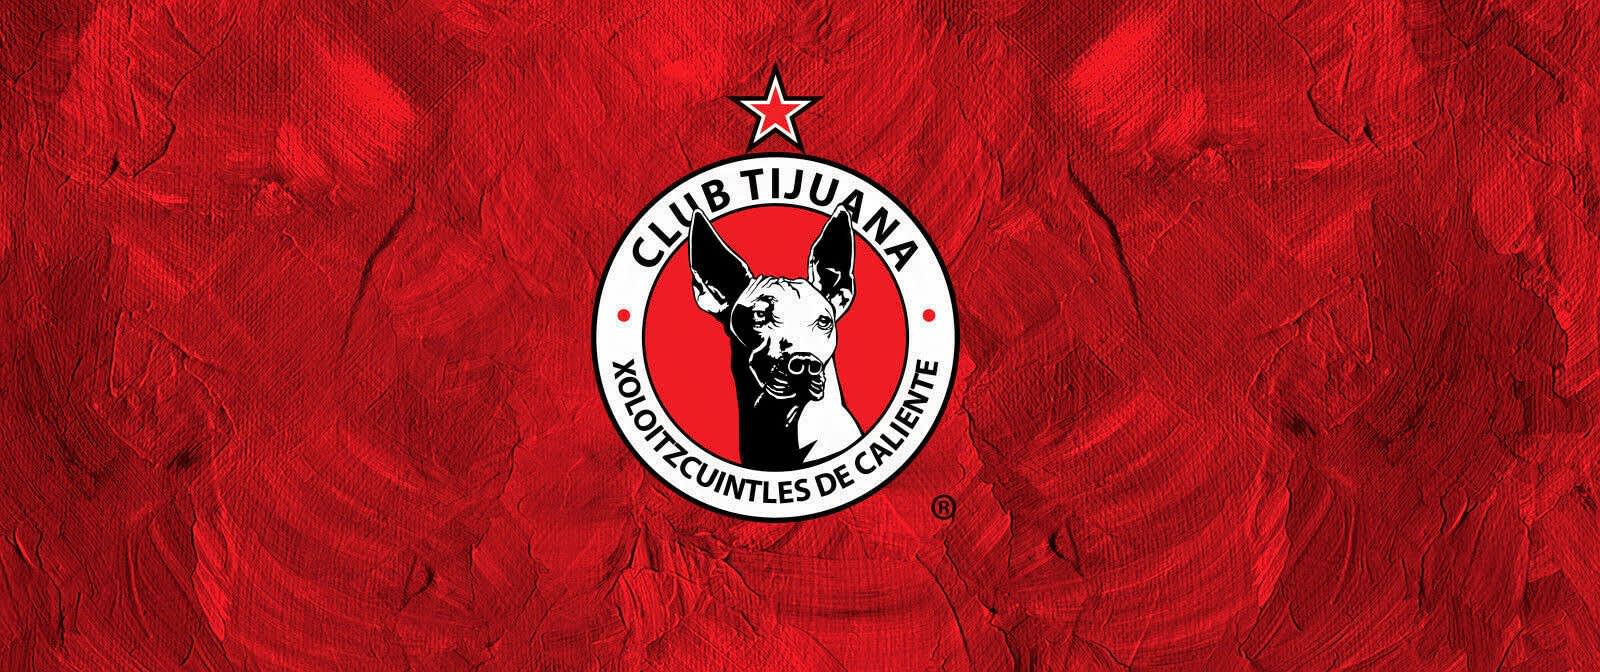 Club Tijuana vs Club Leon Tickets at Estadio Caliente - StubFindr